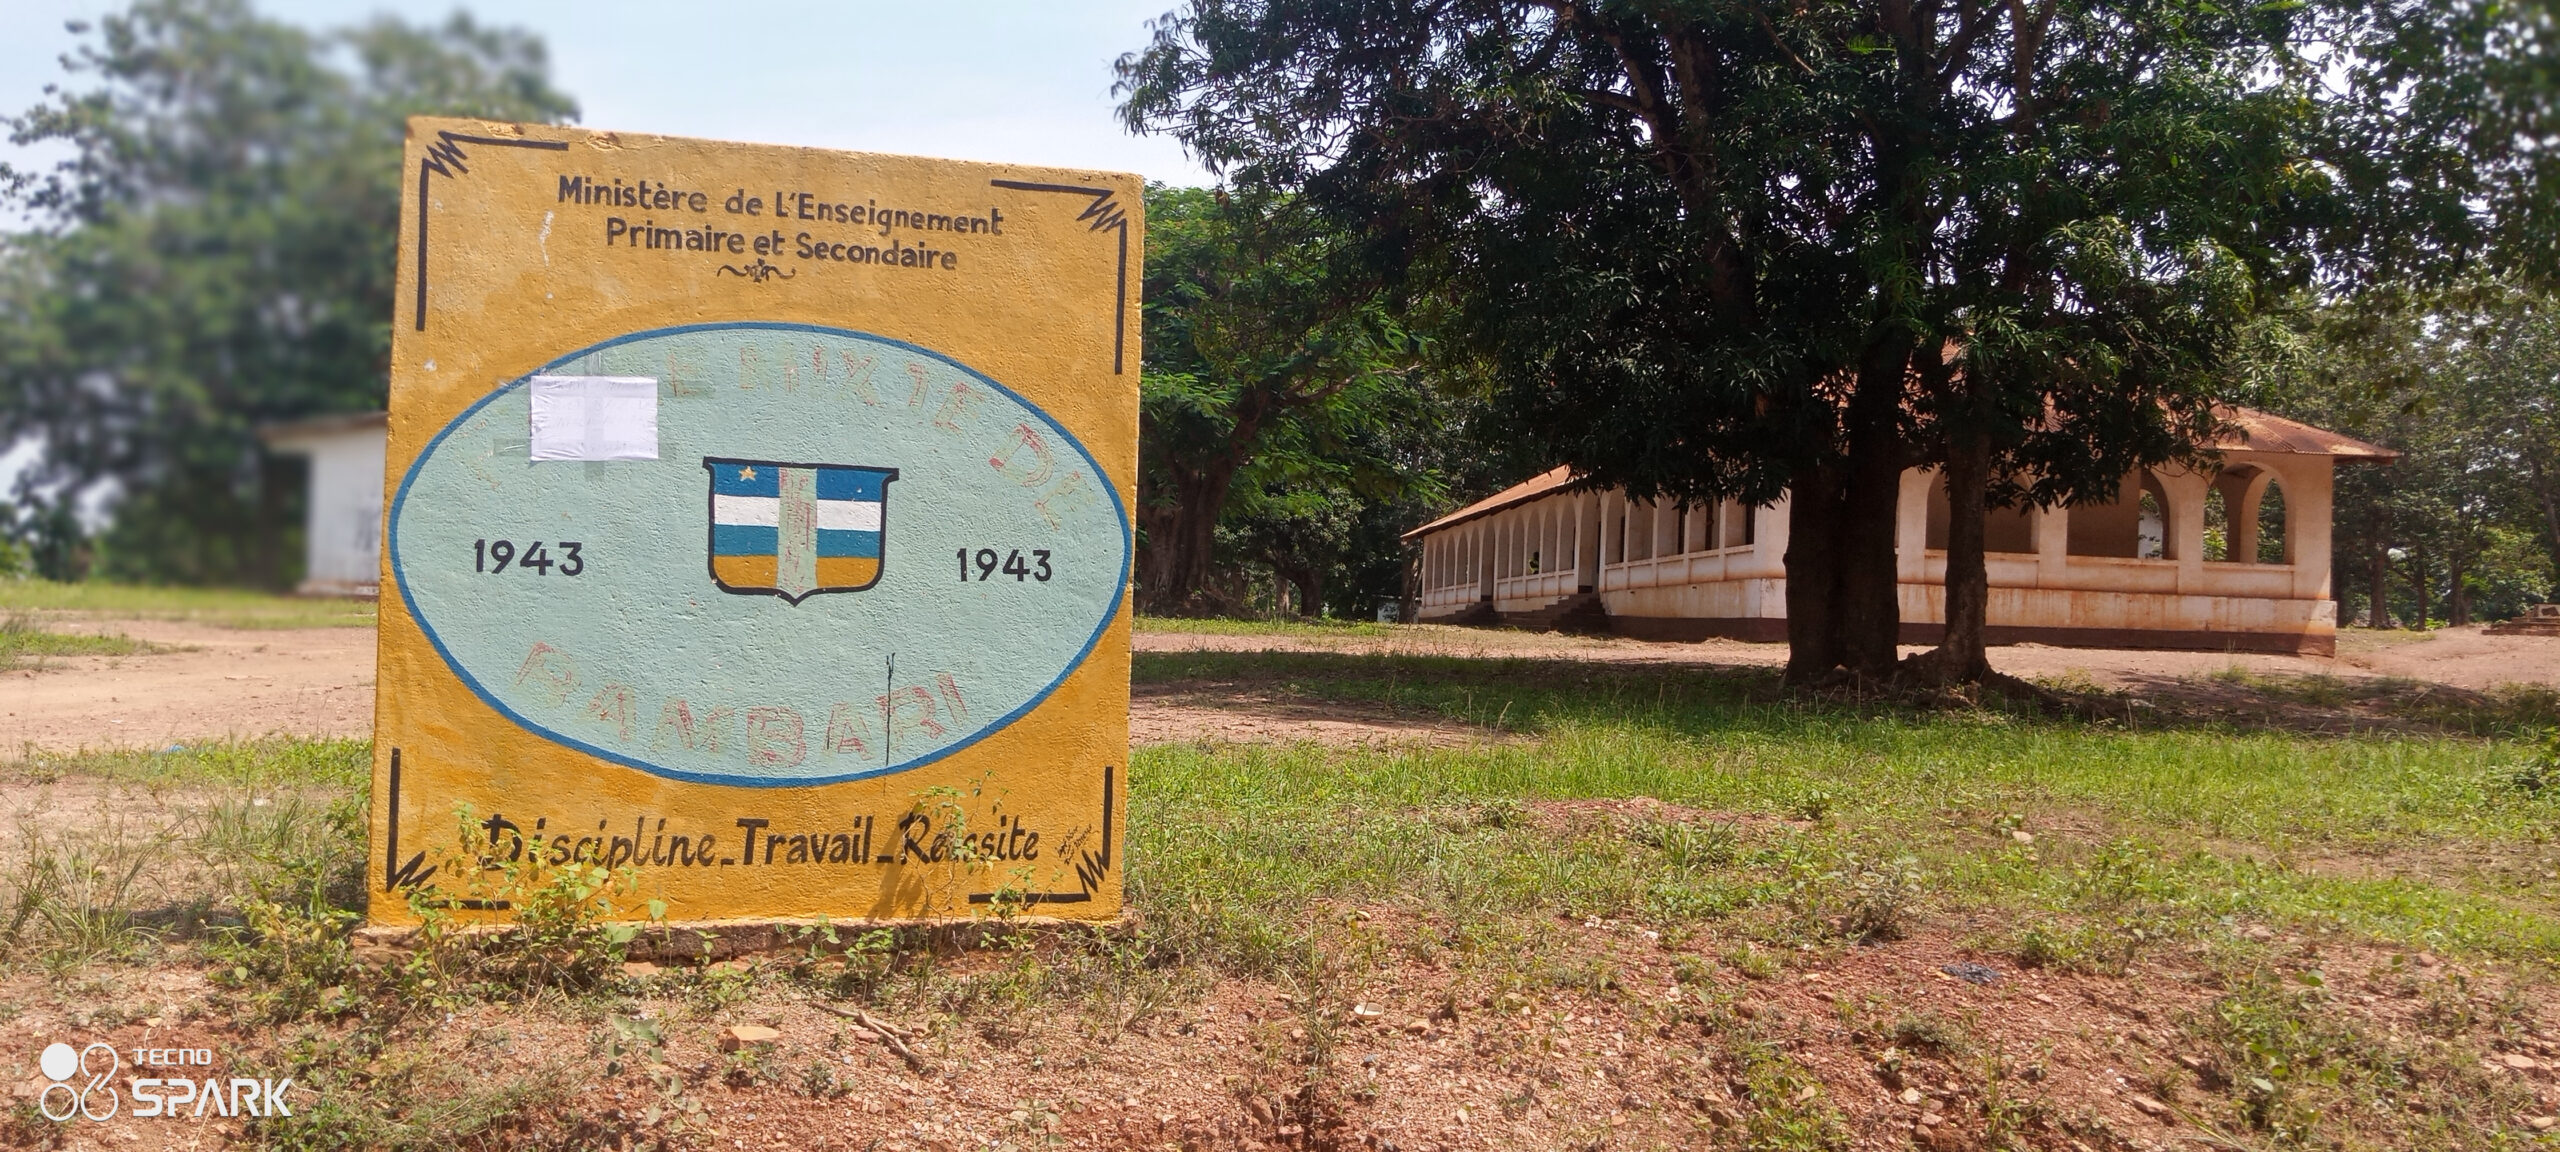 RCA/Education: les élèves et responsables du lycée de Bambari sollicitent des enseignants supplémentaires